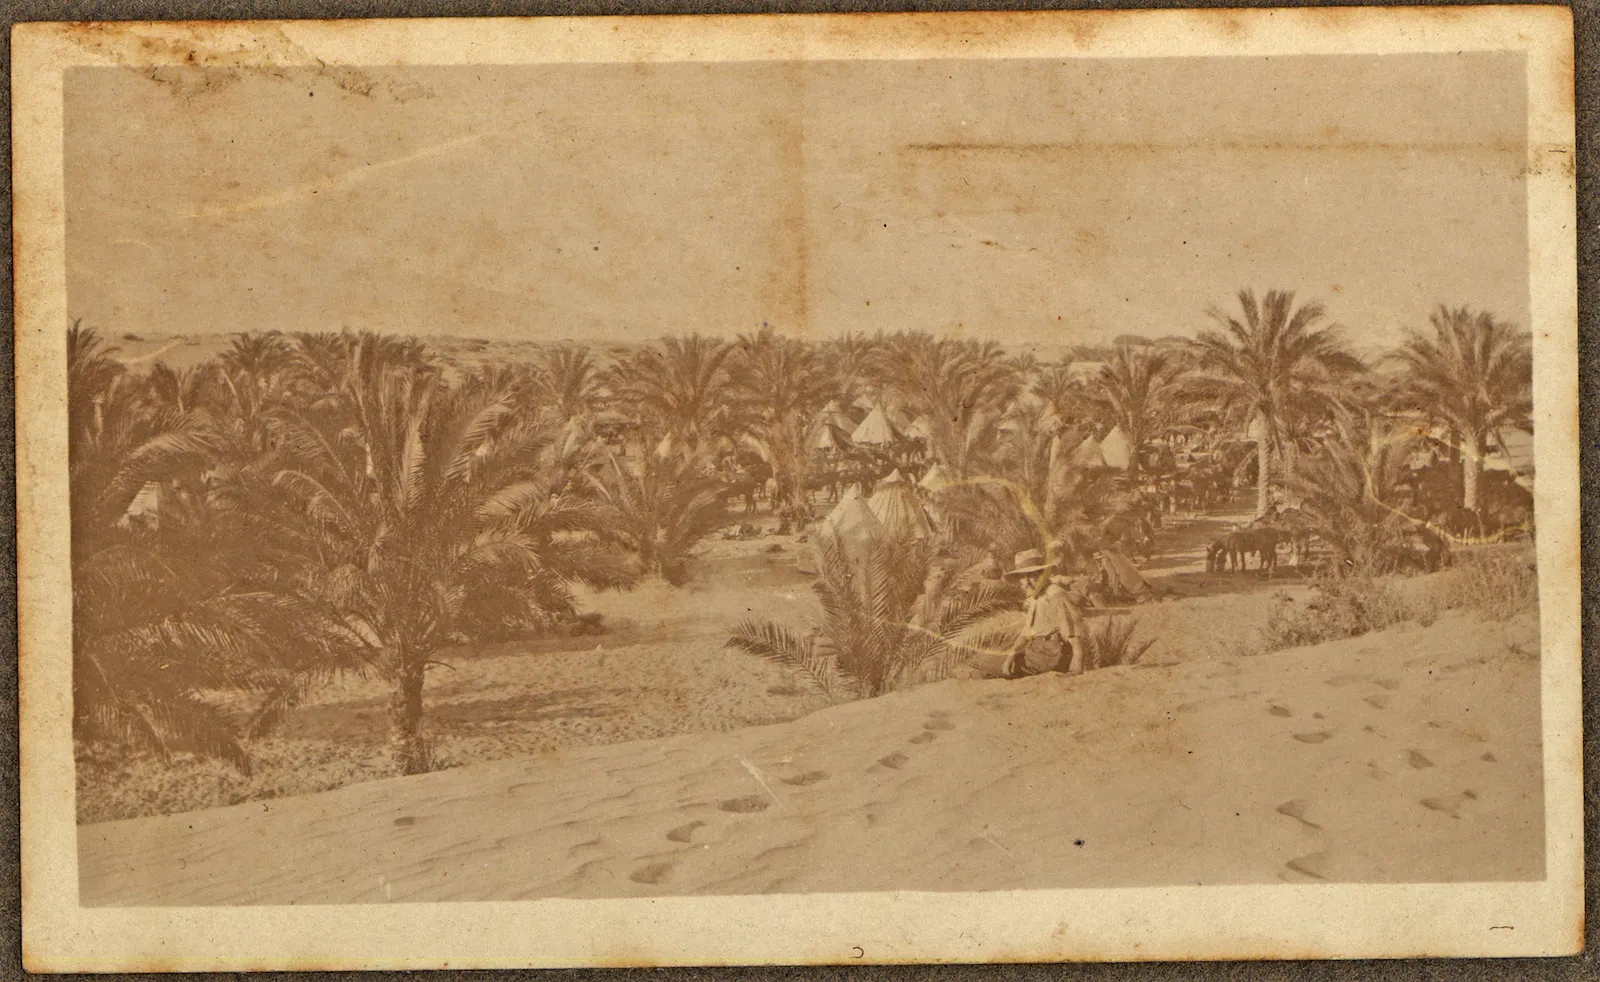 Encampment in Palestine, 1915, WRD Laurie